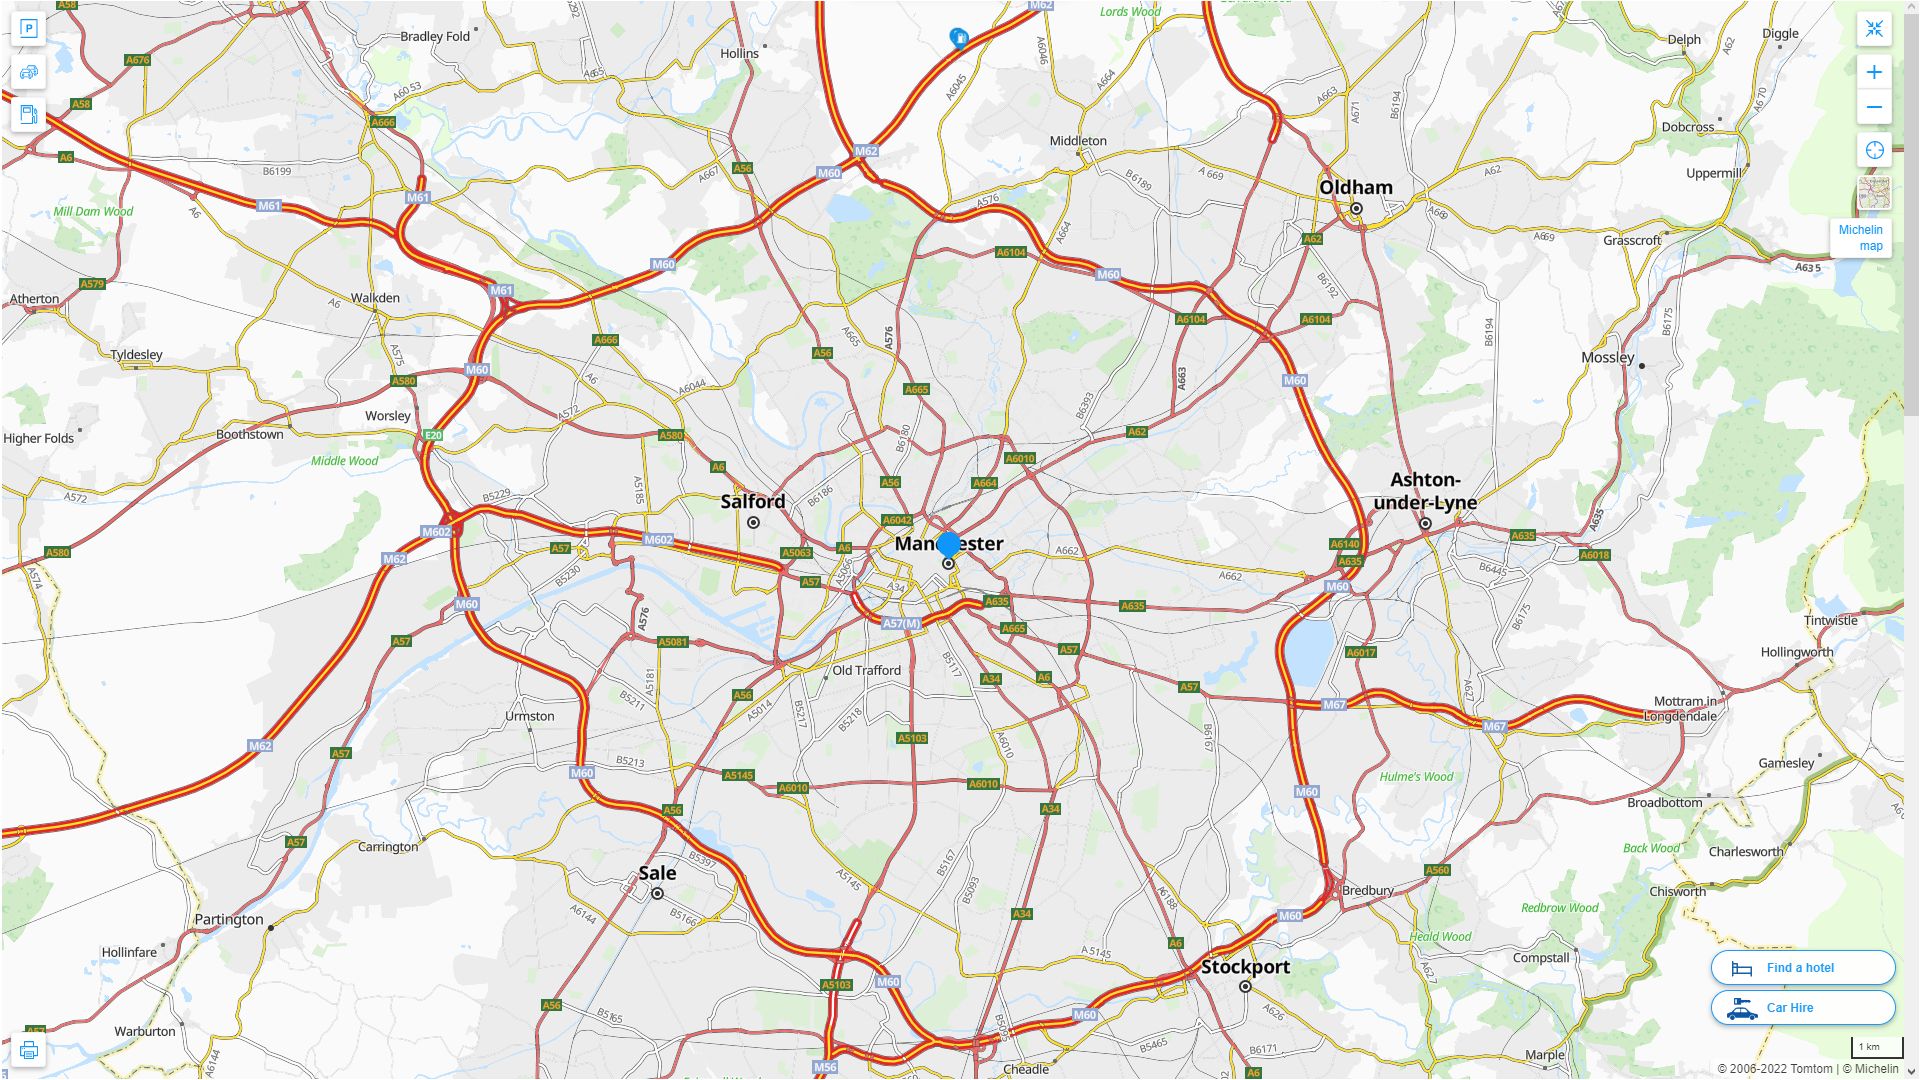 Manchester Royaume Uni Autoroute et carte routiere